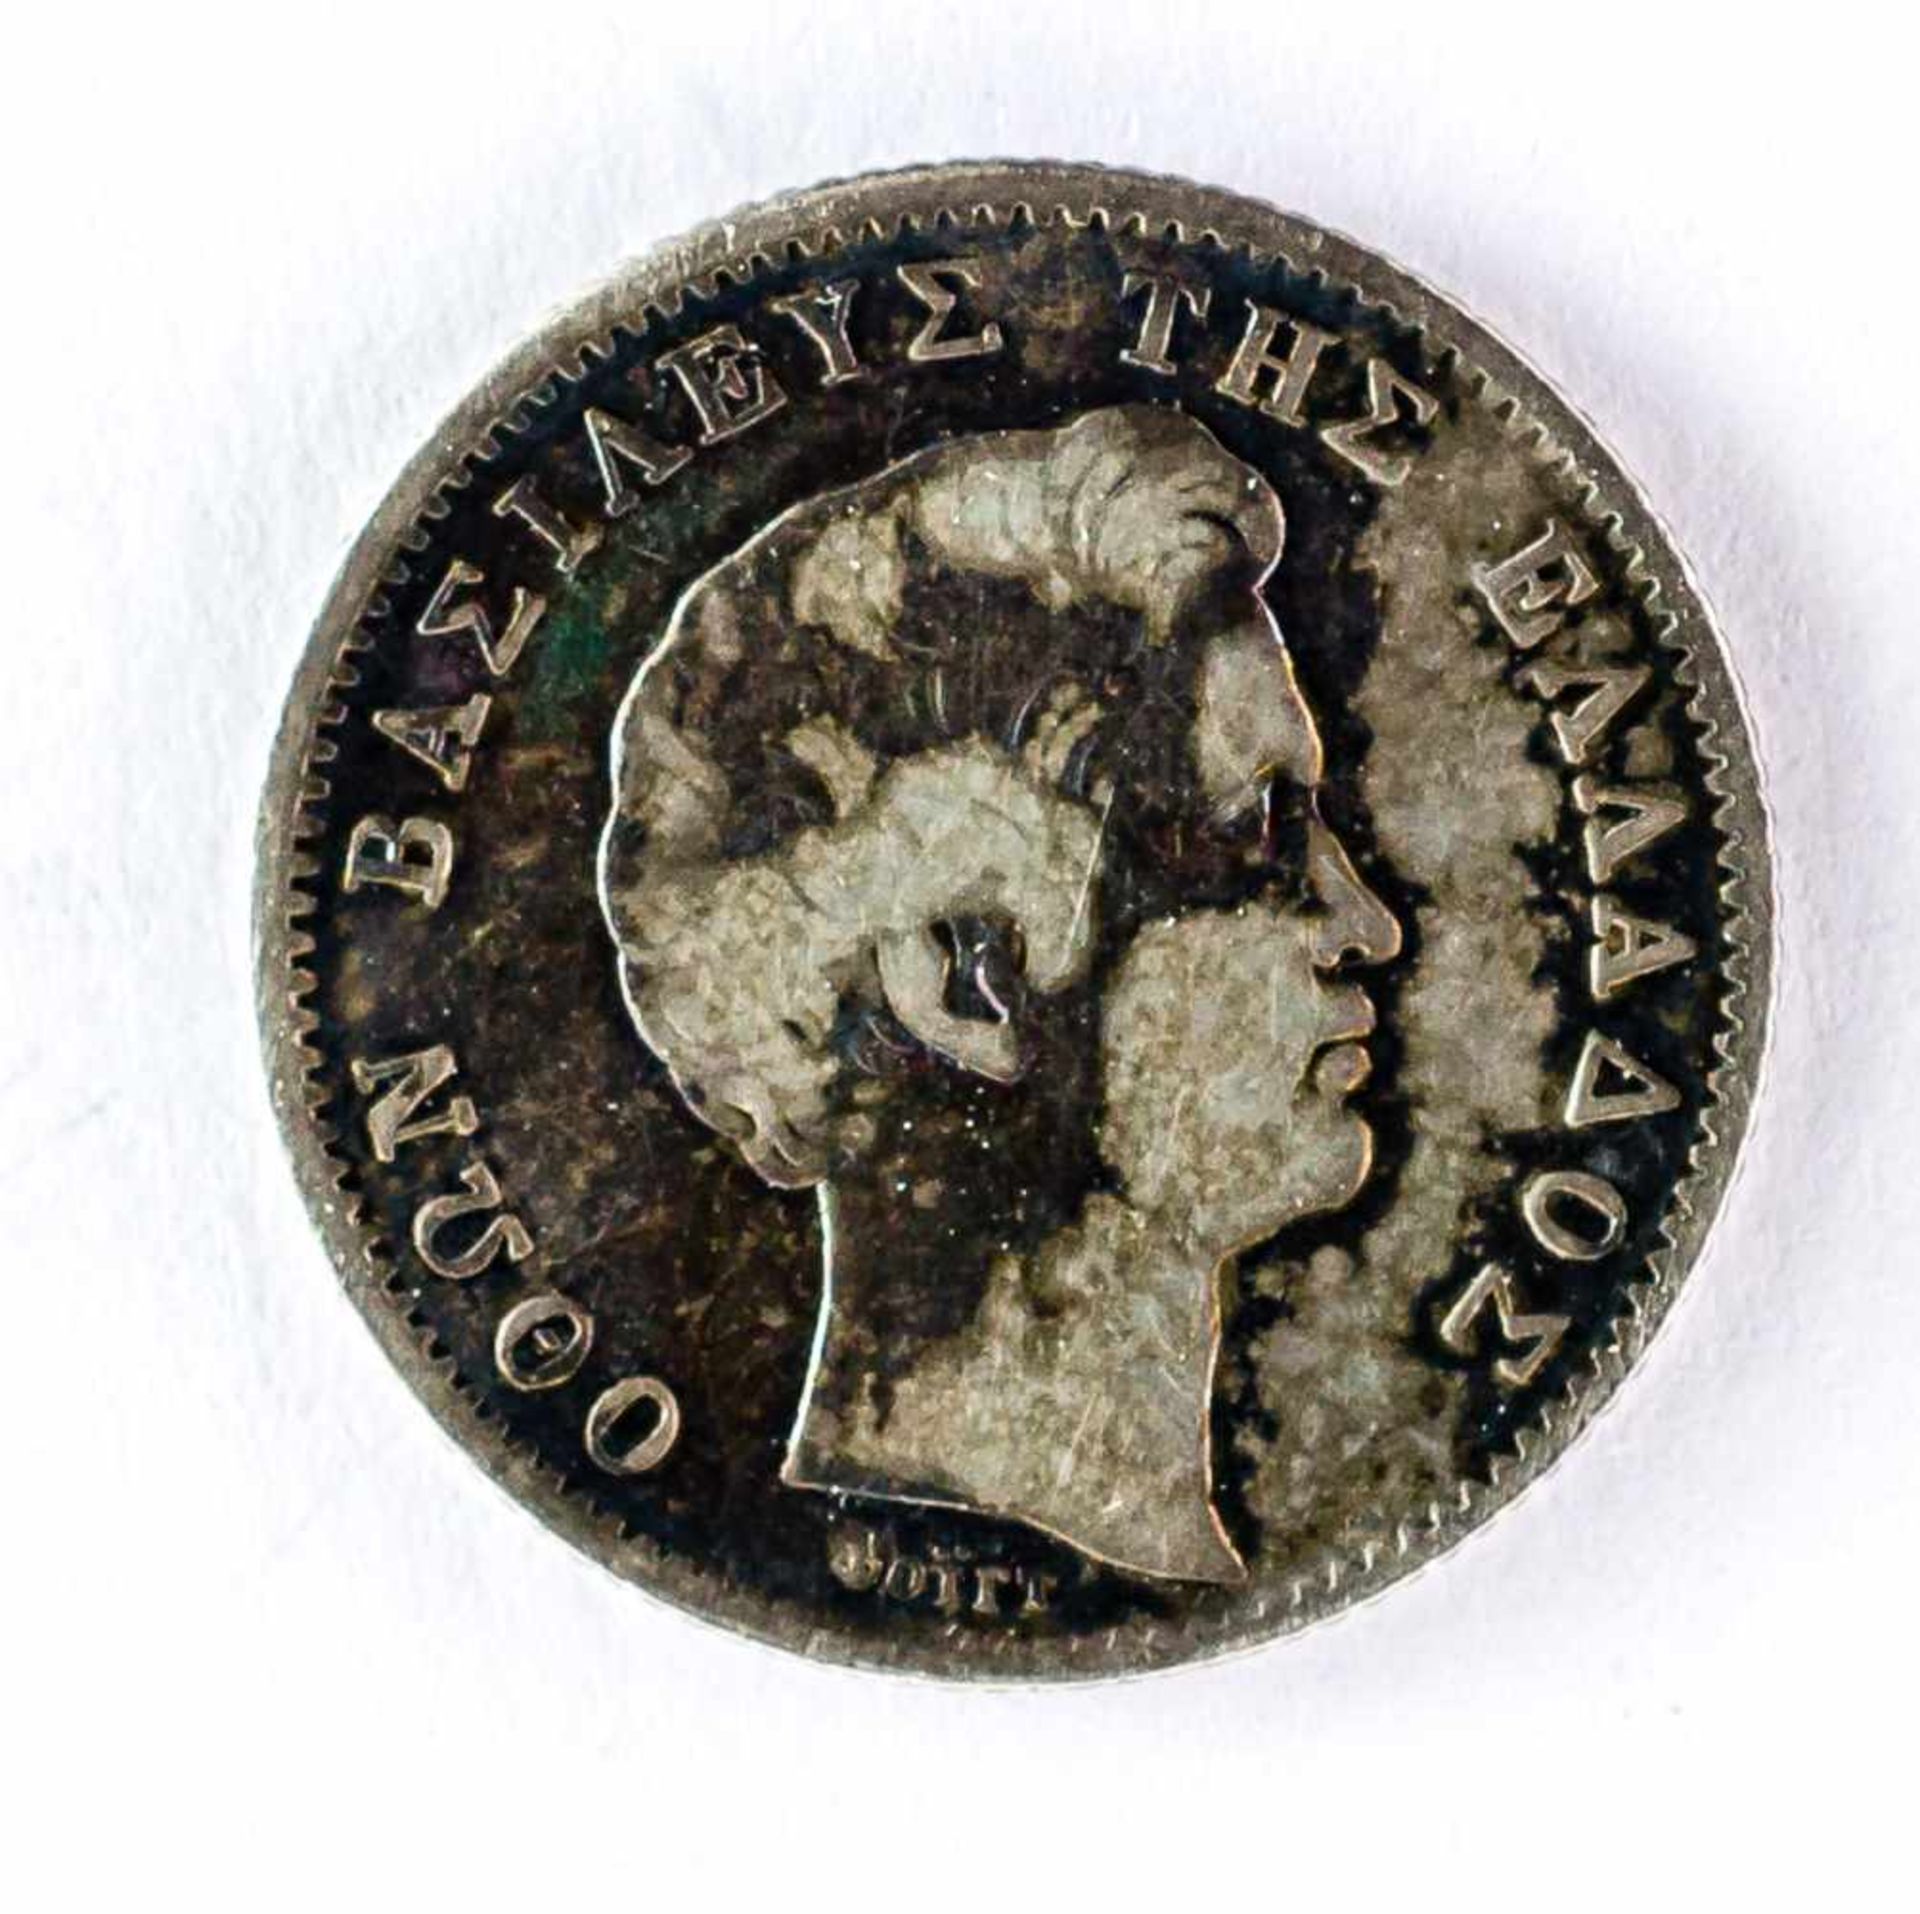 Eindrachmenmünze Silber 1834, Entwurf von Carl Friedrich Voigt Durchmesser: 2,3 cm Vorderseite: